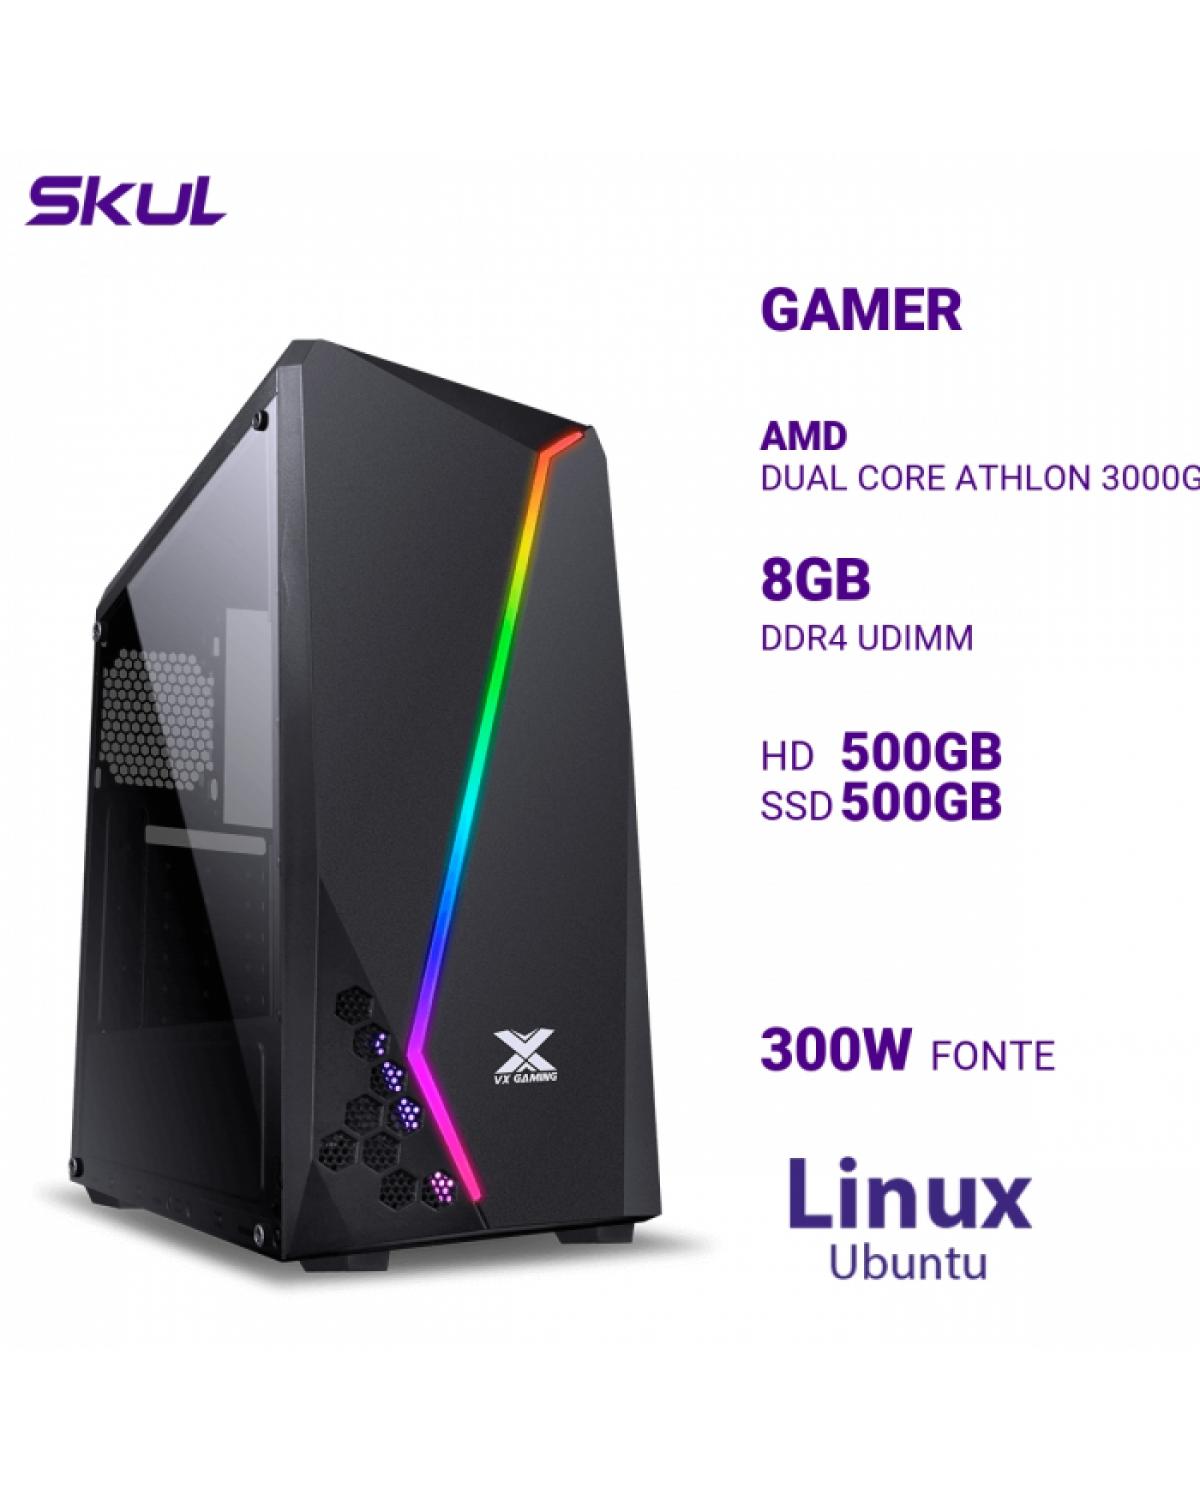 COMPUTADOR GAMER 1000 DUAL CORE ATHLON 3000G 3.50GHZ MEM 8GB DDR4 HD 500GB SSD 500GB NVME FONTE 300W LINUX